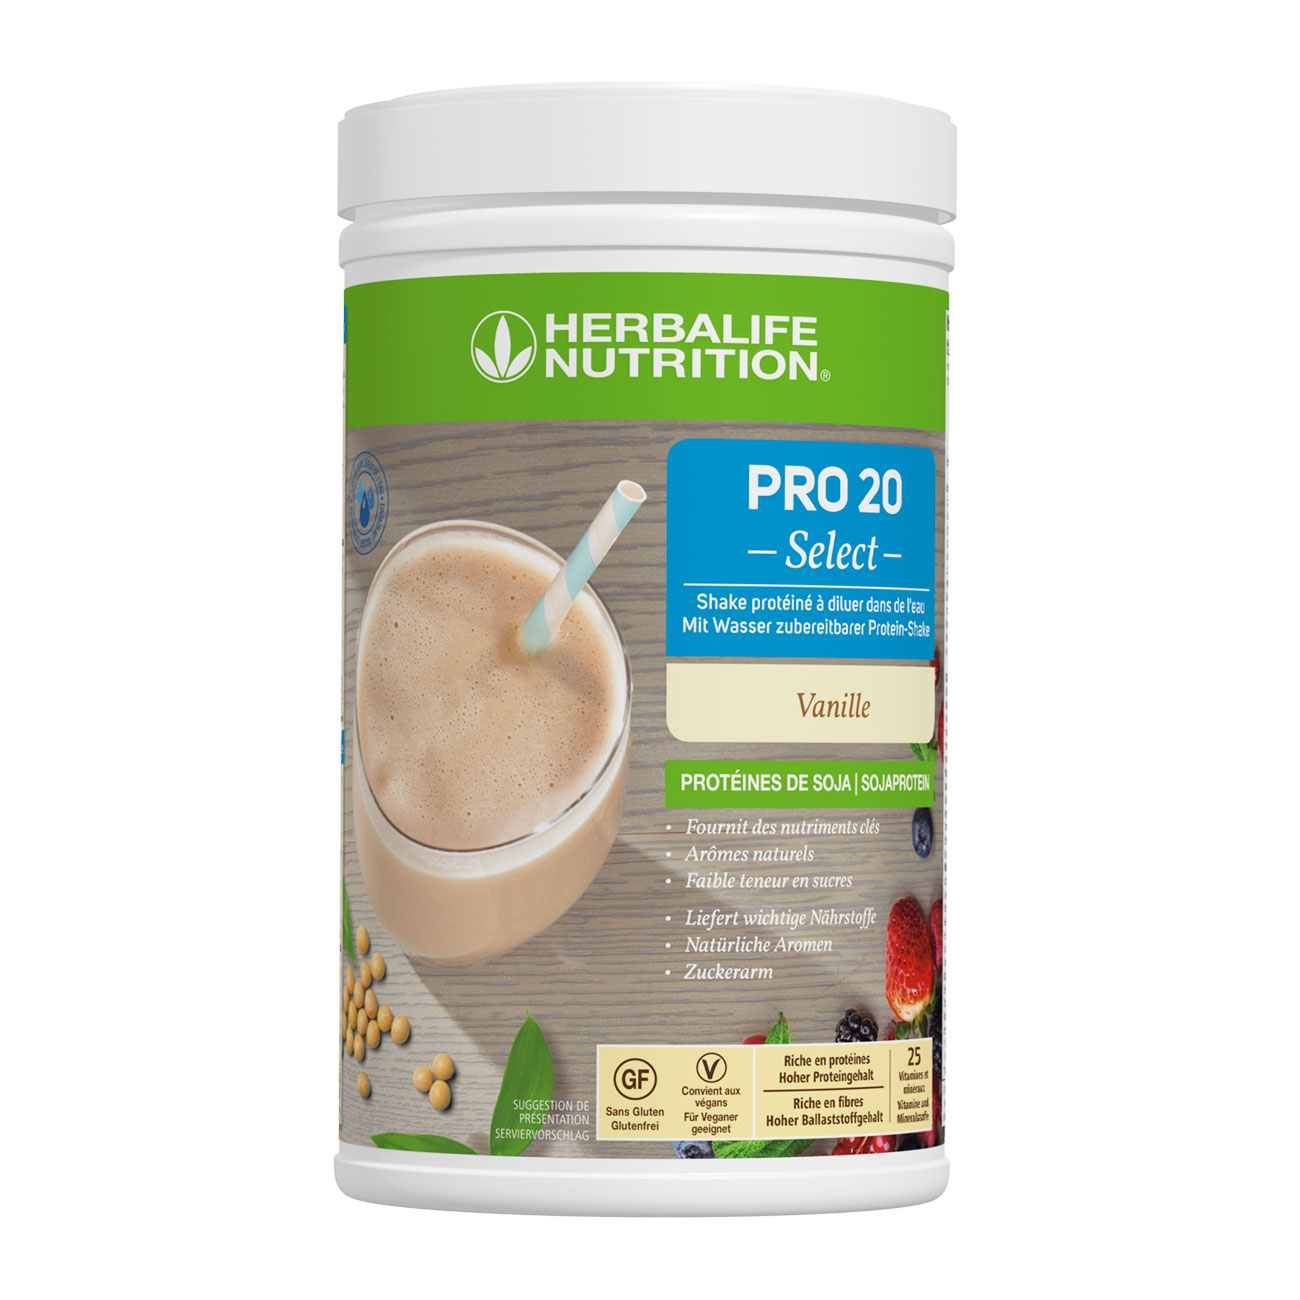 PRO 20 Select - Encas protéiné saveur vanille, sans gluten et sans lactose. 20g de protéines, 25 vitamines et minéraux, 6 de fibres, 146 calories